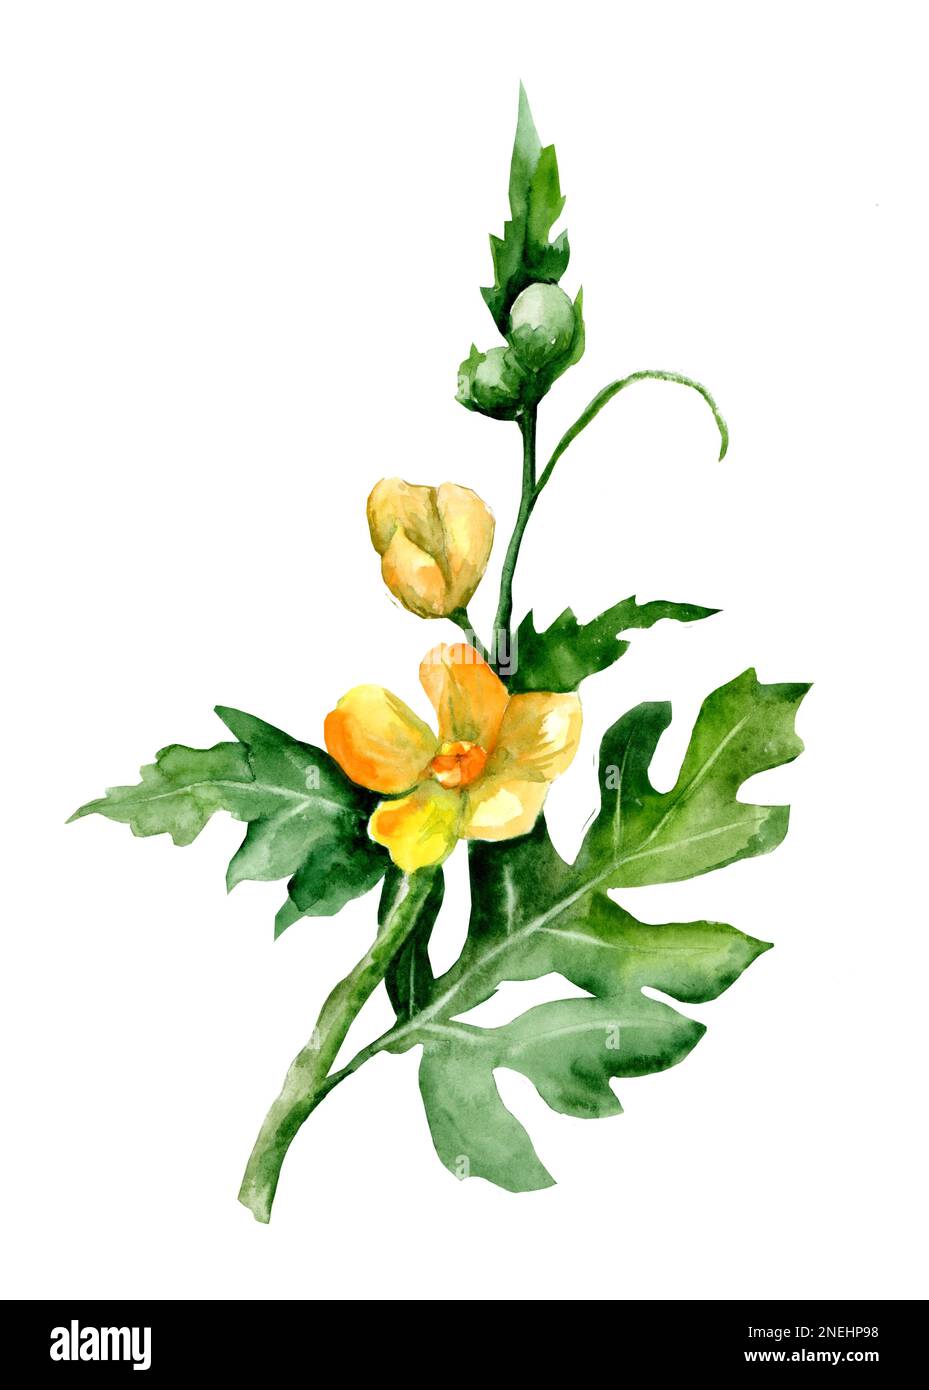 Peinture aquarelle dessinée à la main isolée sur fond blanc. Illustration à la main de la branche et des fleurs de pastèque. Banque D'Images